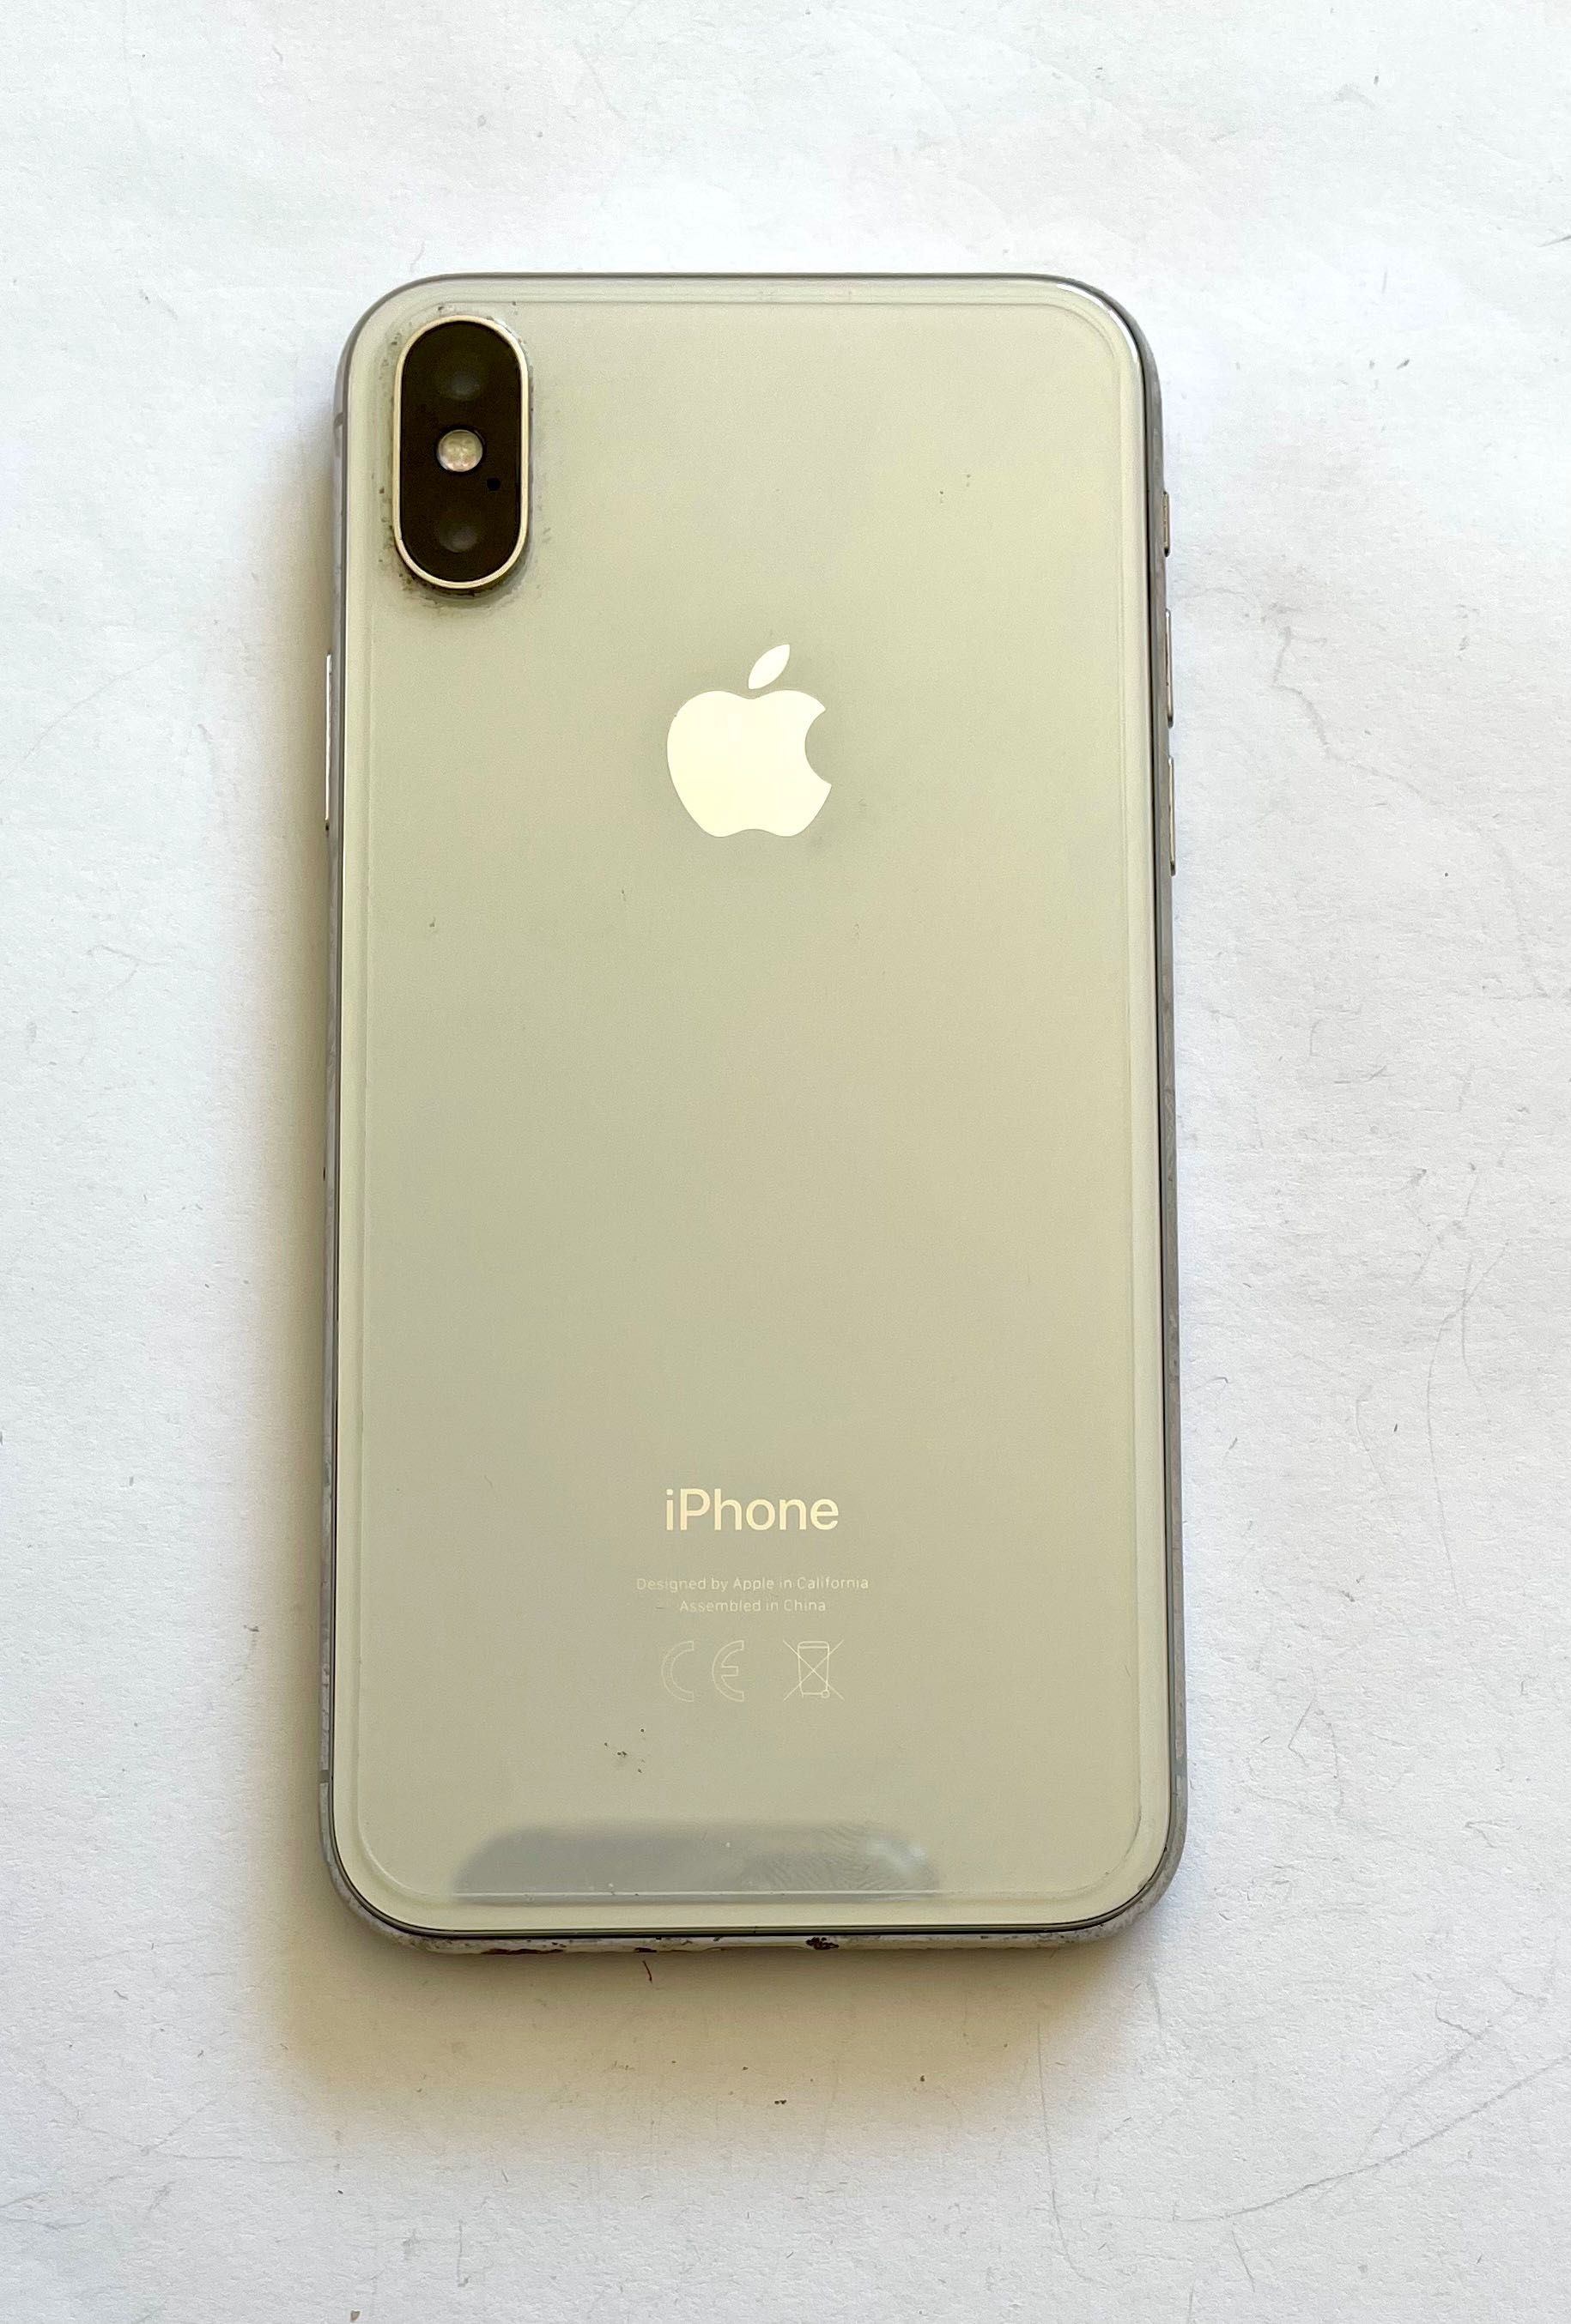 iPhon X 256 GB Silver